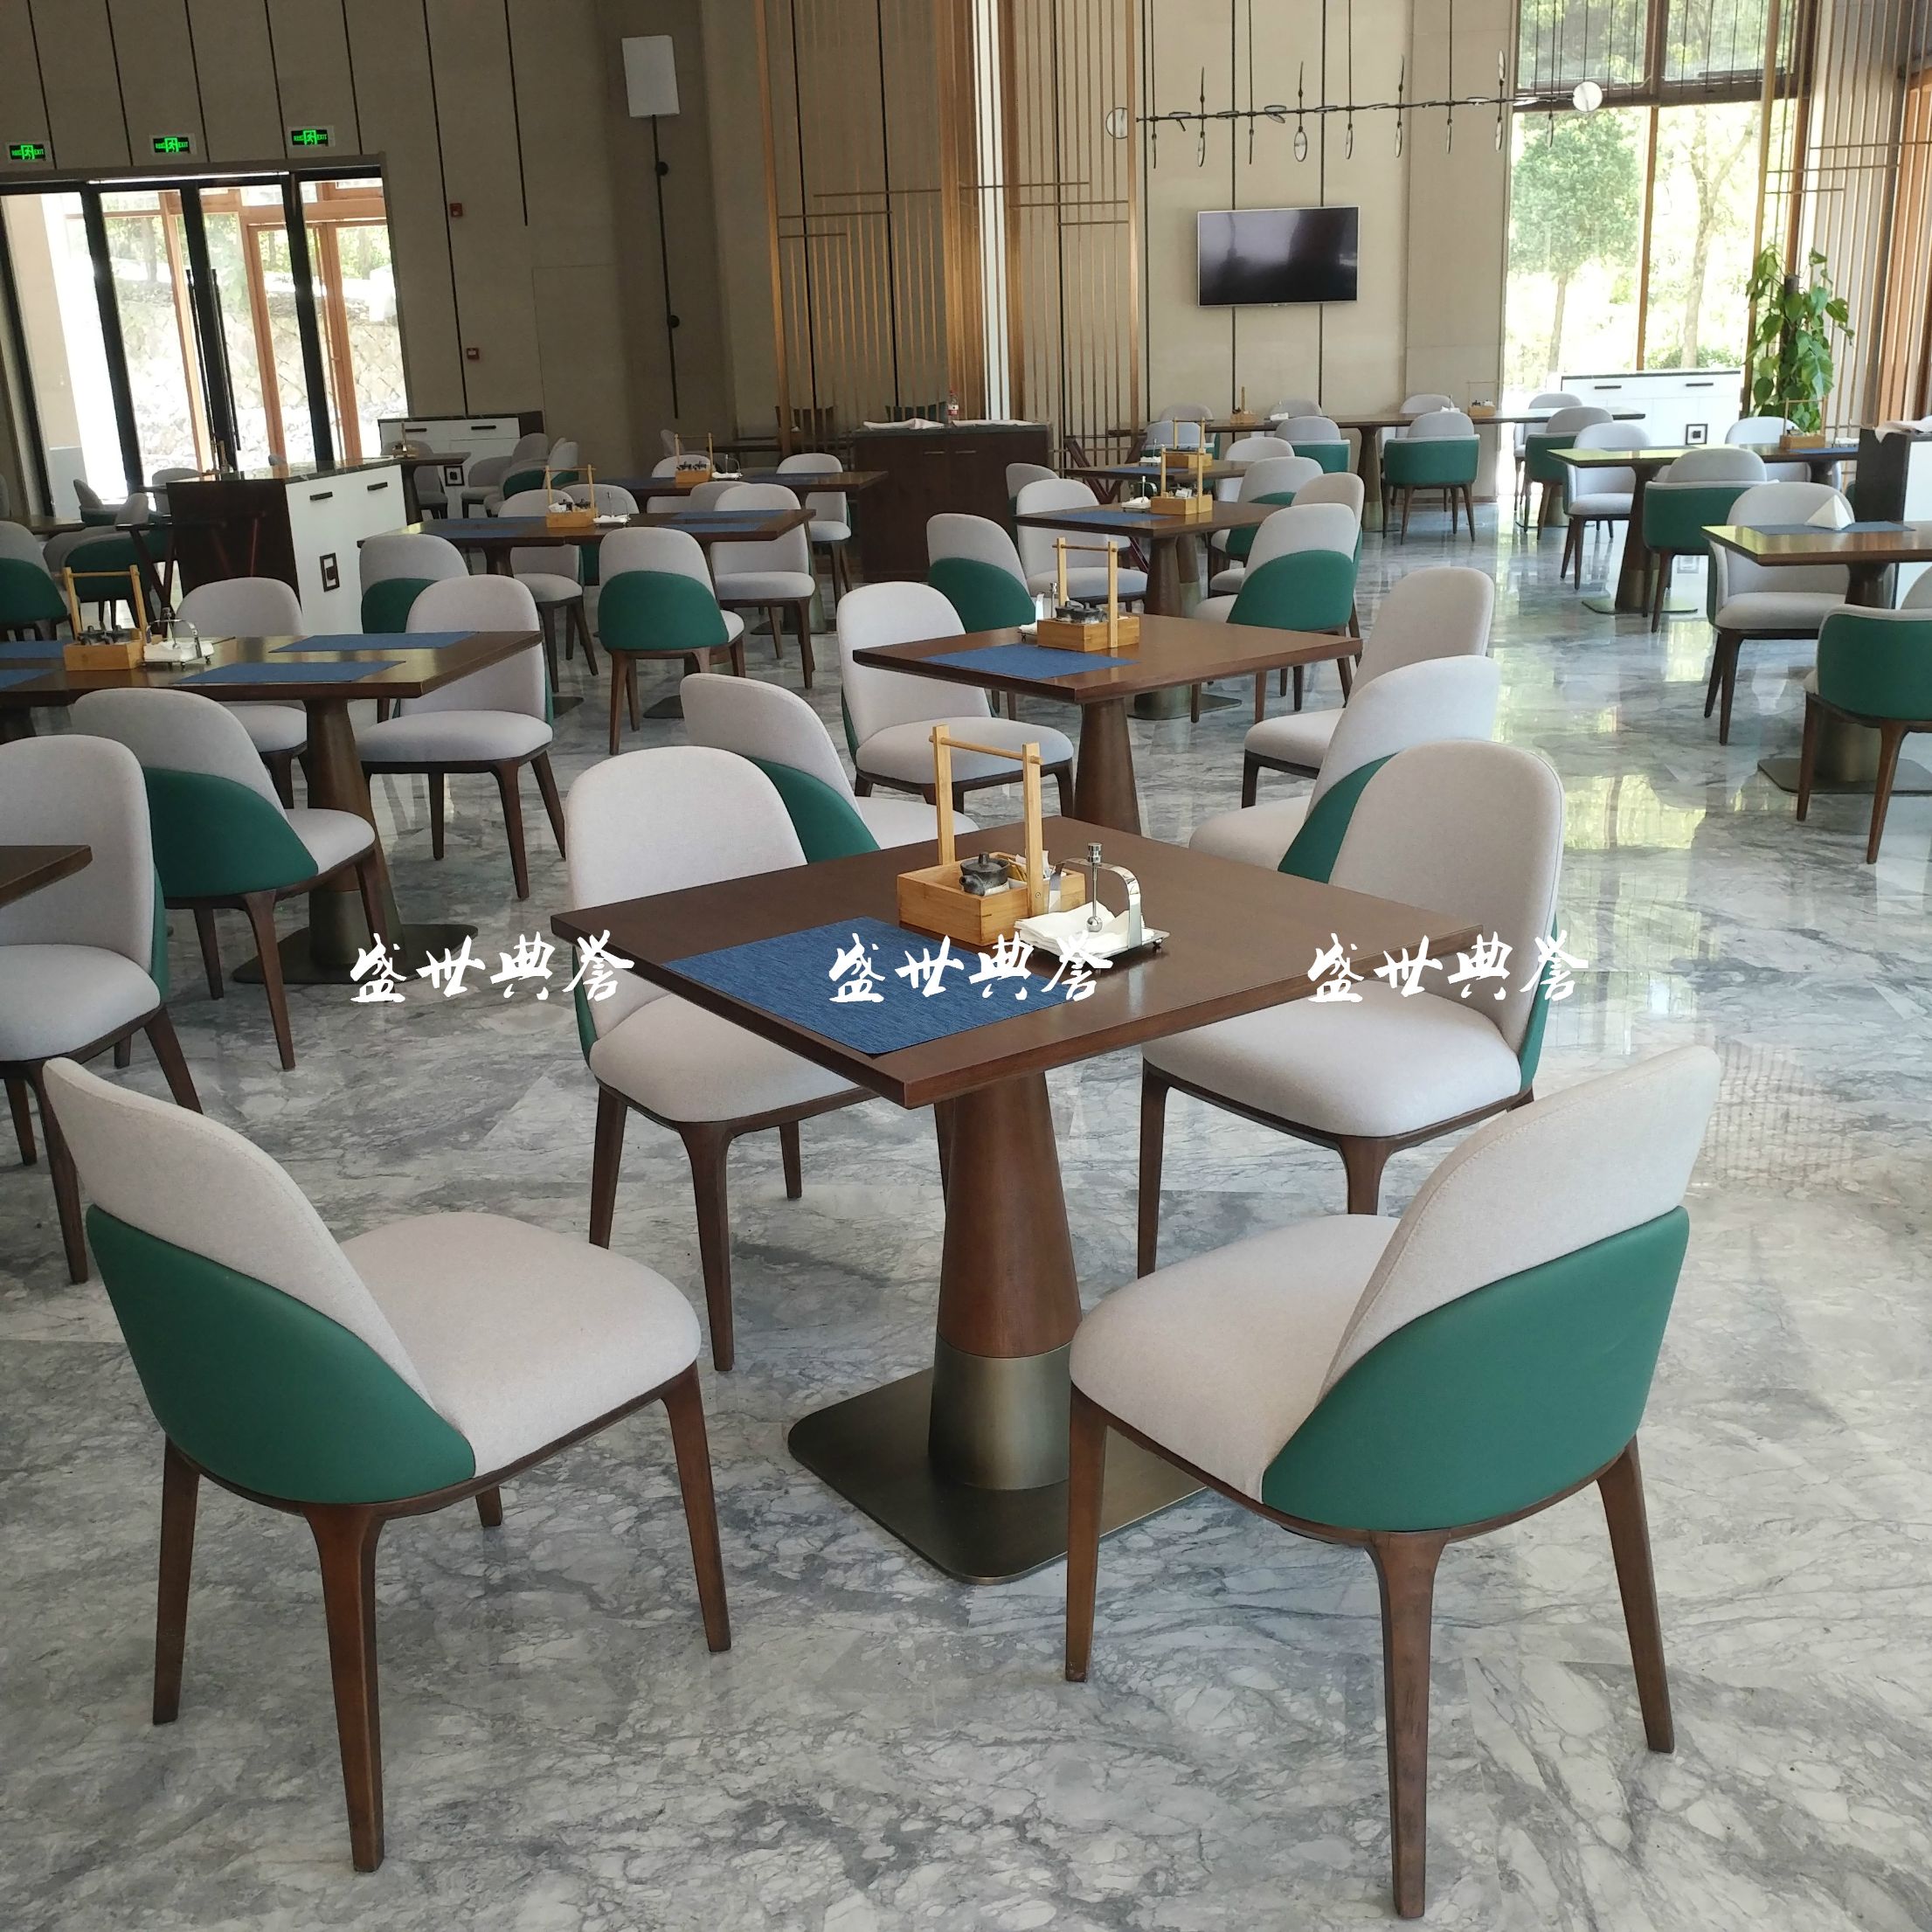 桂林度假酒店西餐厅餐桌椅饭店自助餐厅实木椅宾馆早餐椅子轻奢椅产品图